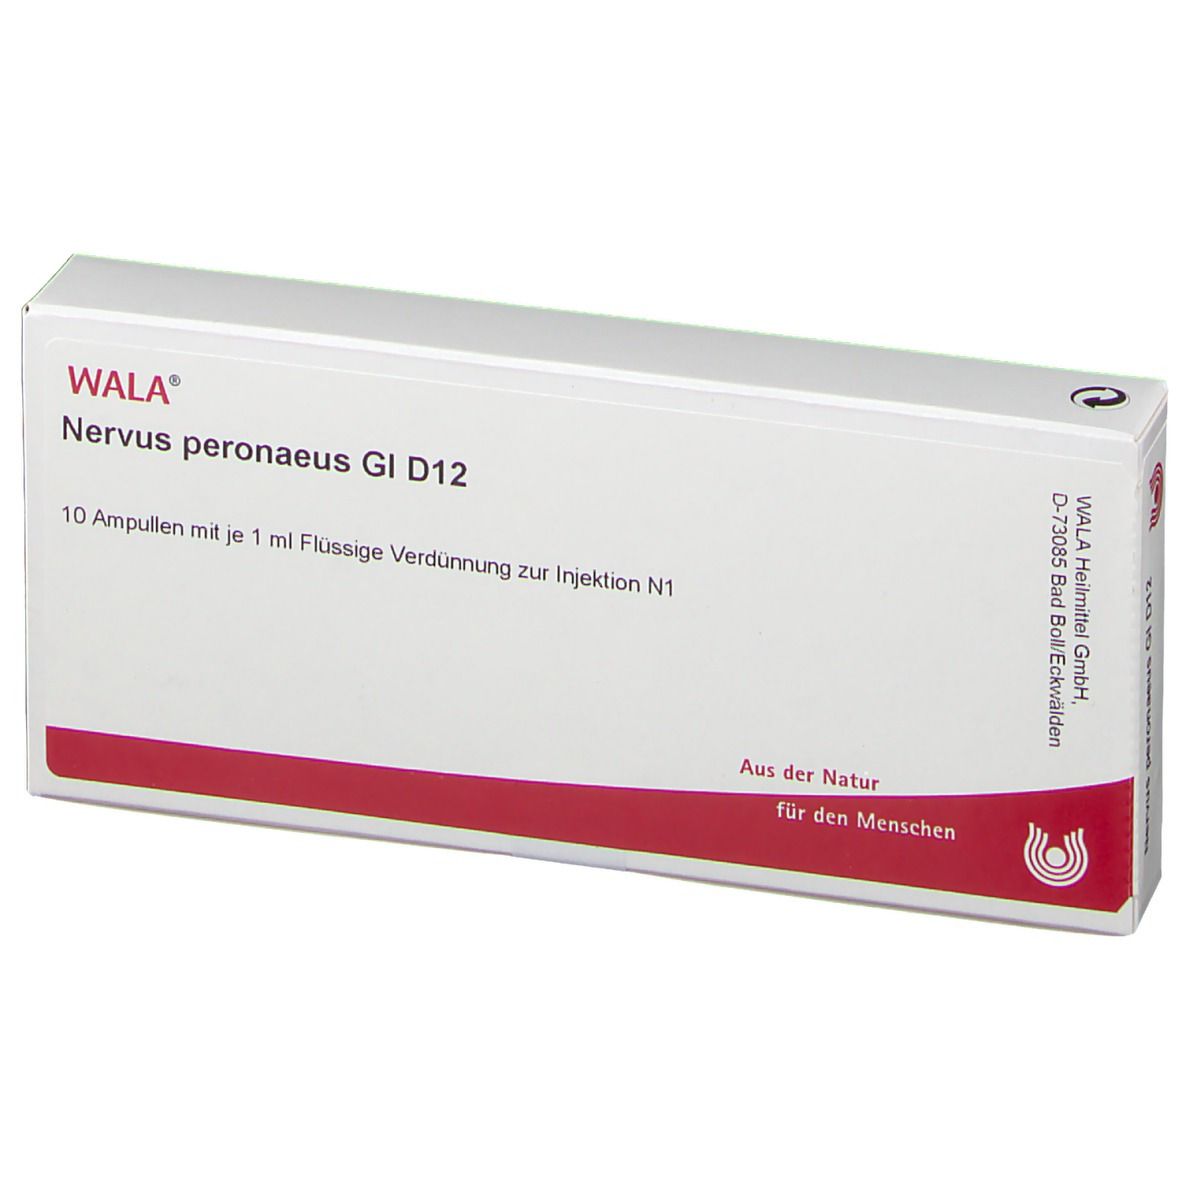 WALA® Nervus peronaeus Gl D 12